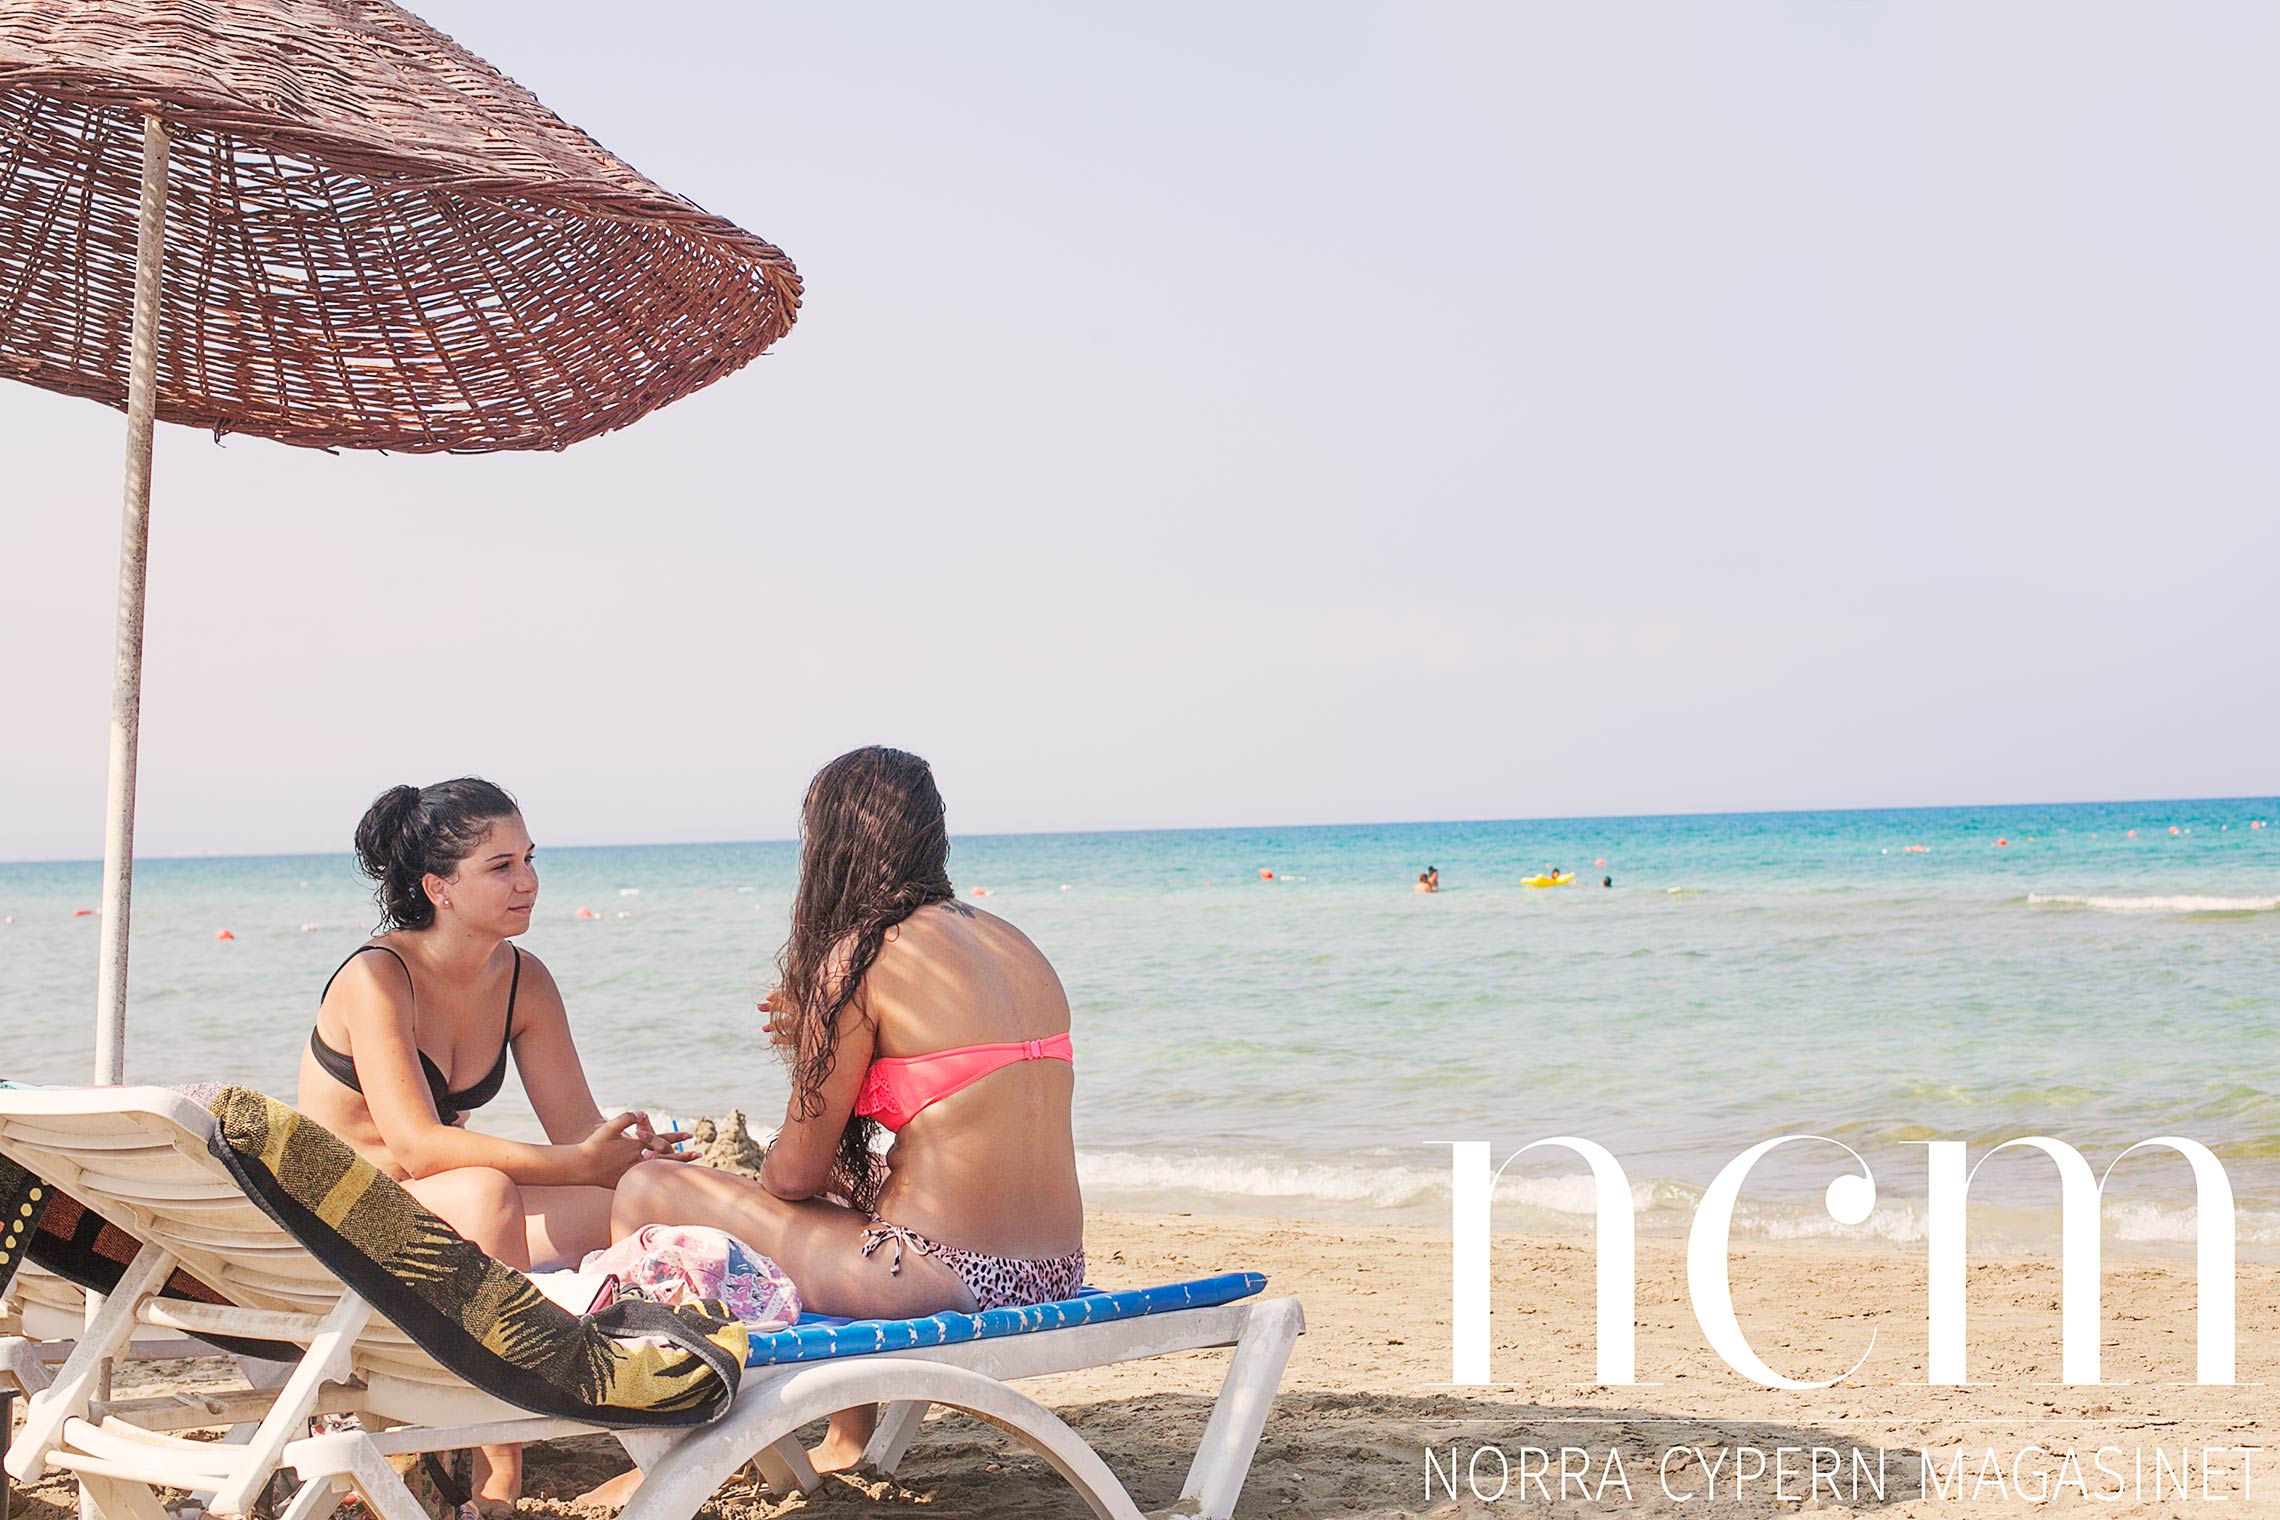 lokalbefolkning och turister älskar glapsides i famagusta på norra cypern